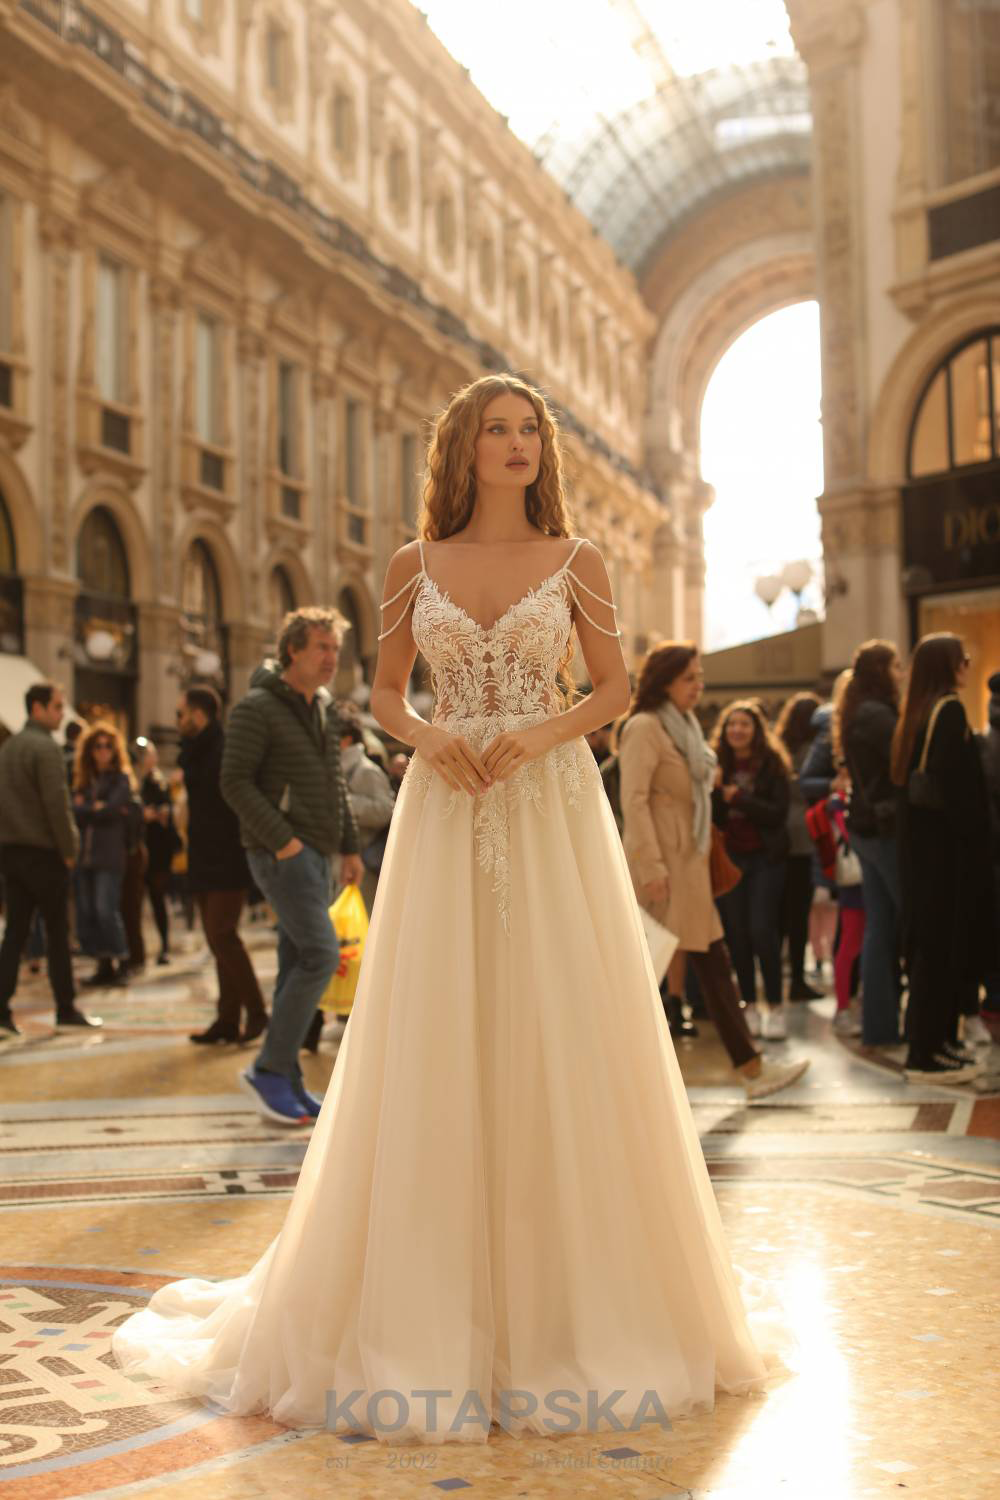 Braut in einem traumhaften Designer-Hochzeitskleid mit transparenter Corsage, wunderschön verziert